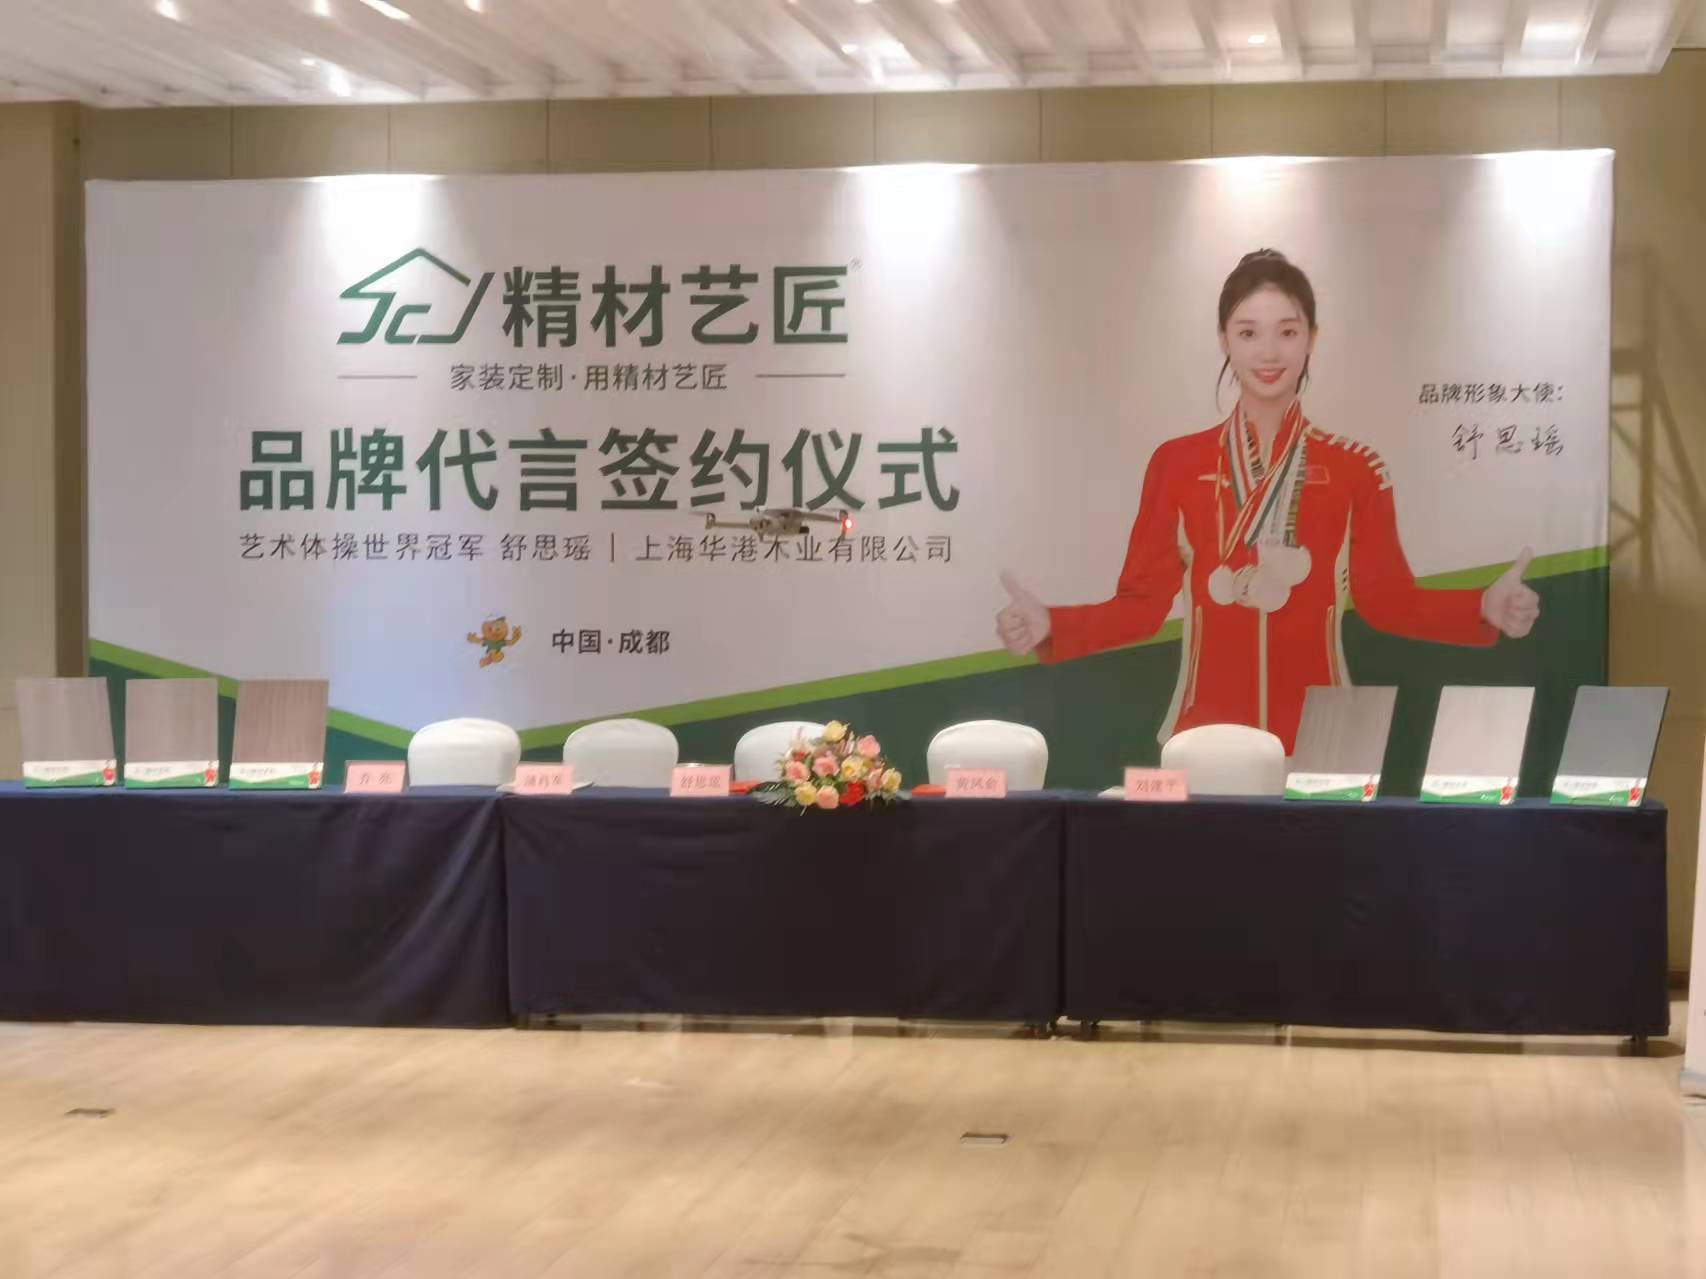 祝贺中国板材品牌精材艺匠签约艺术体操冠军舒思瑶